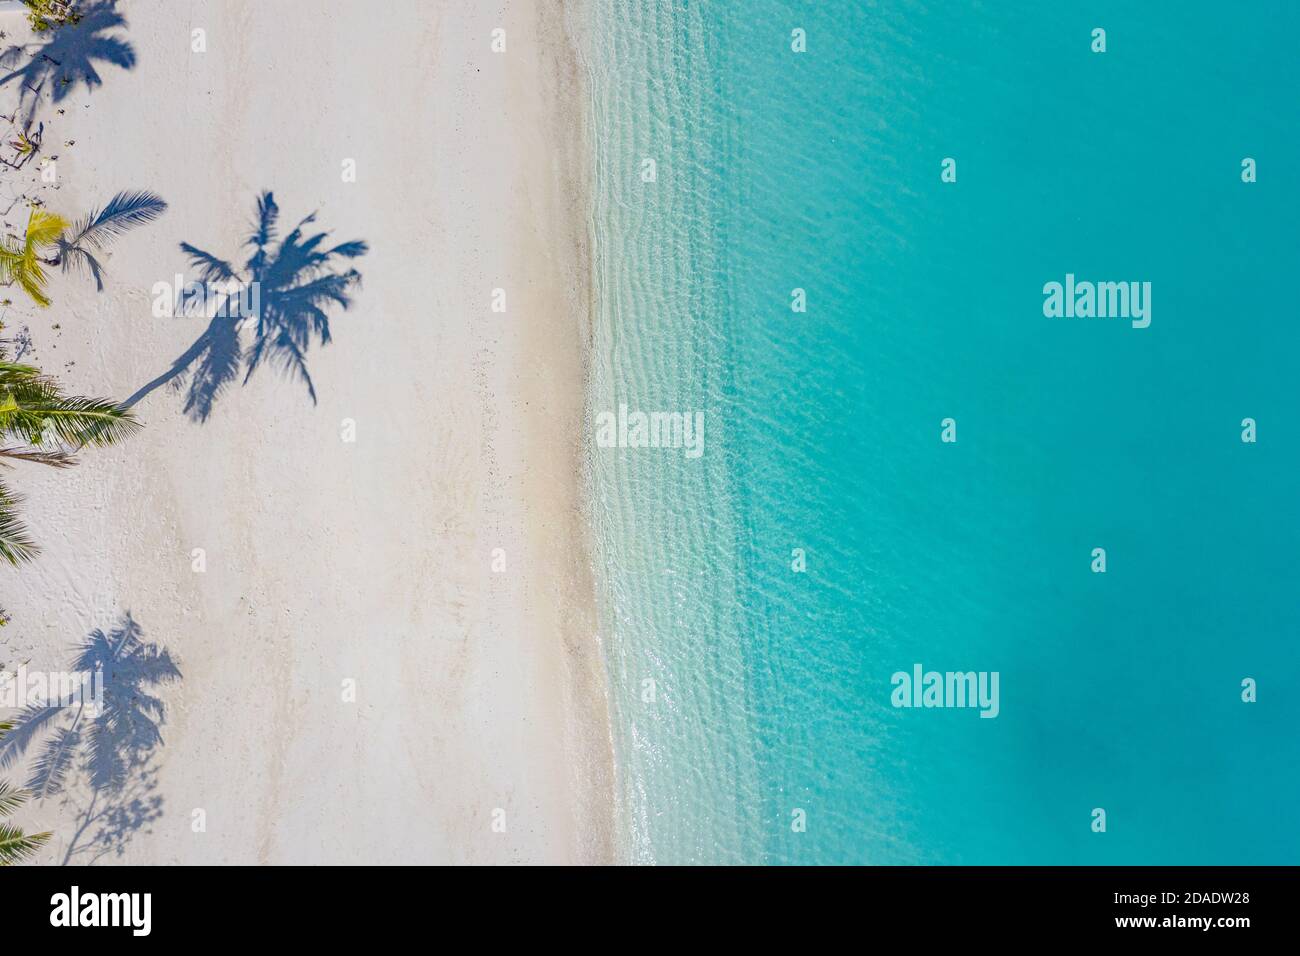 Plage avec beau littoral. Incroyable vue sur les drones aériens paysage d'été. L'eau de couleur est turquoise, sable blanc et palmiers ombres, nature ensoleillée Banque D'Images